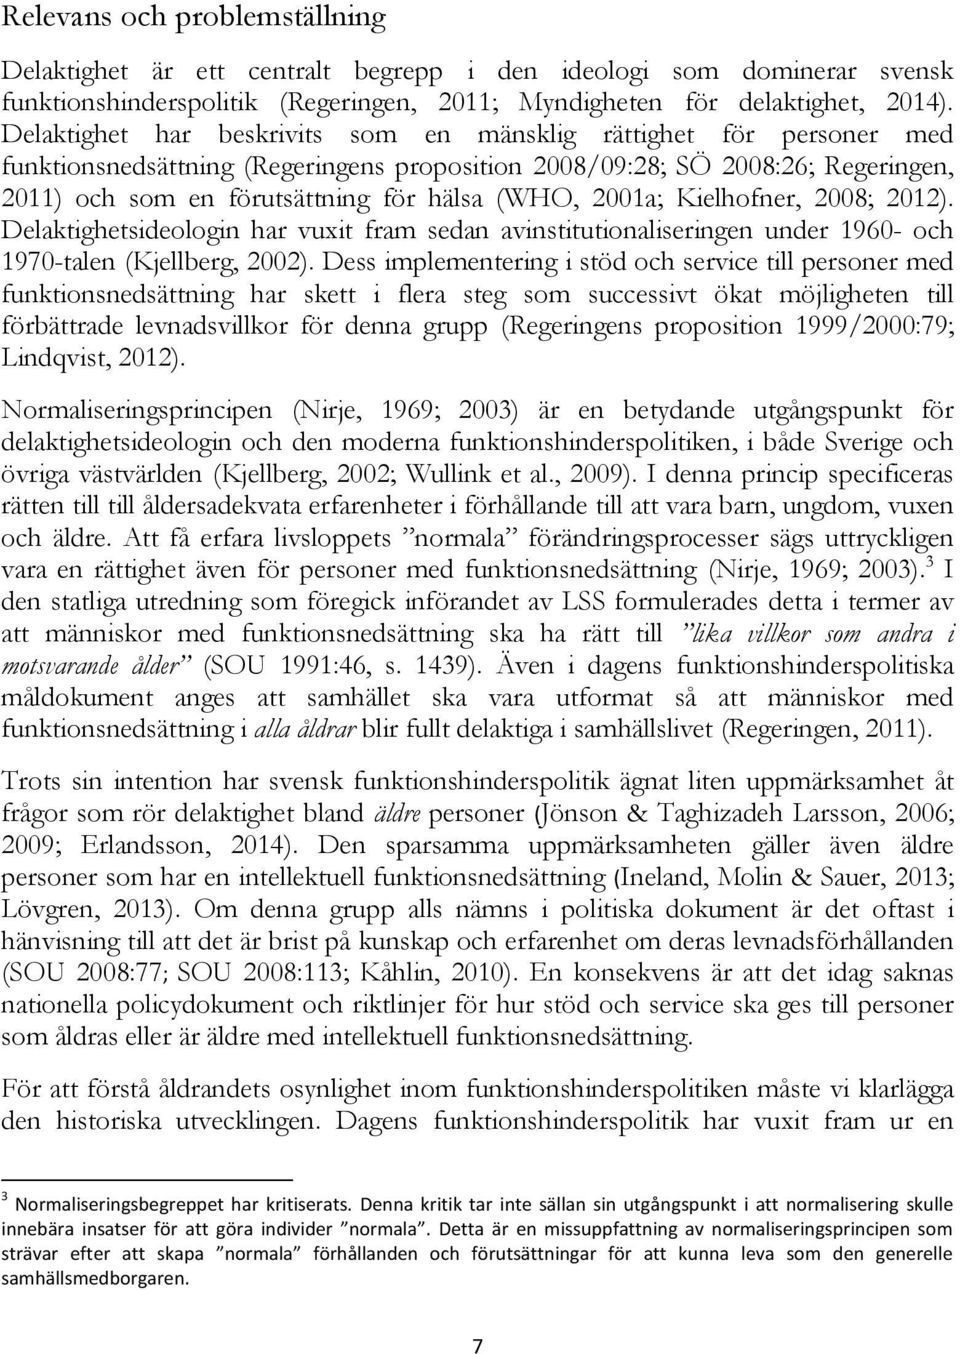 2001a; Kielhofner, 2008; 2012). Delaktighetsideologin har vuxit fram sedan avinstitutionaliseringen under 1960- och 1970-talen (Kjellberg, 2002).